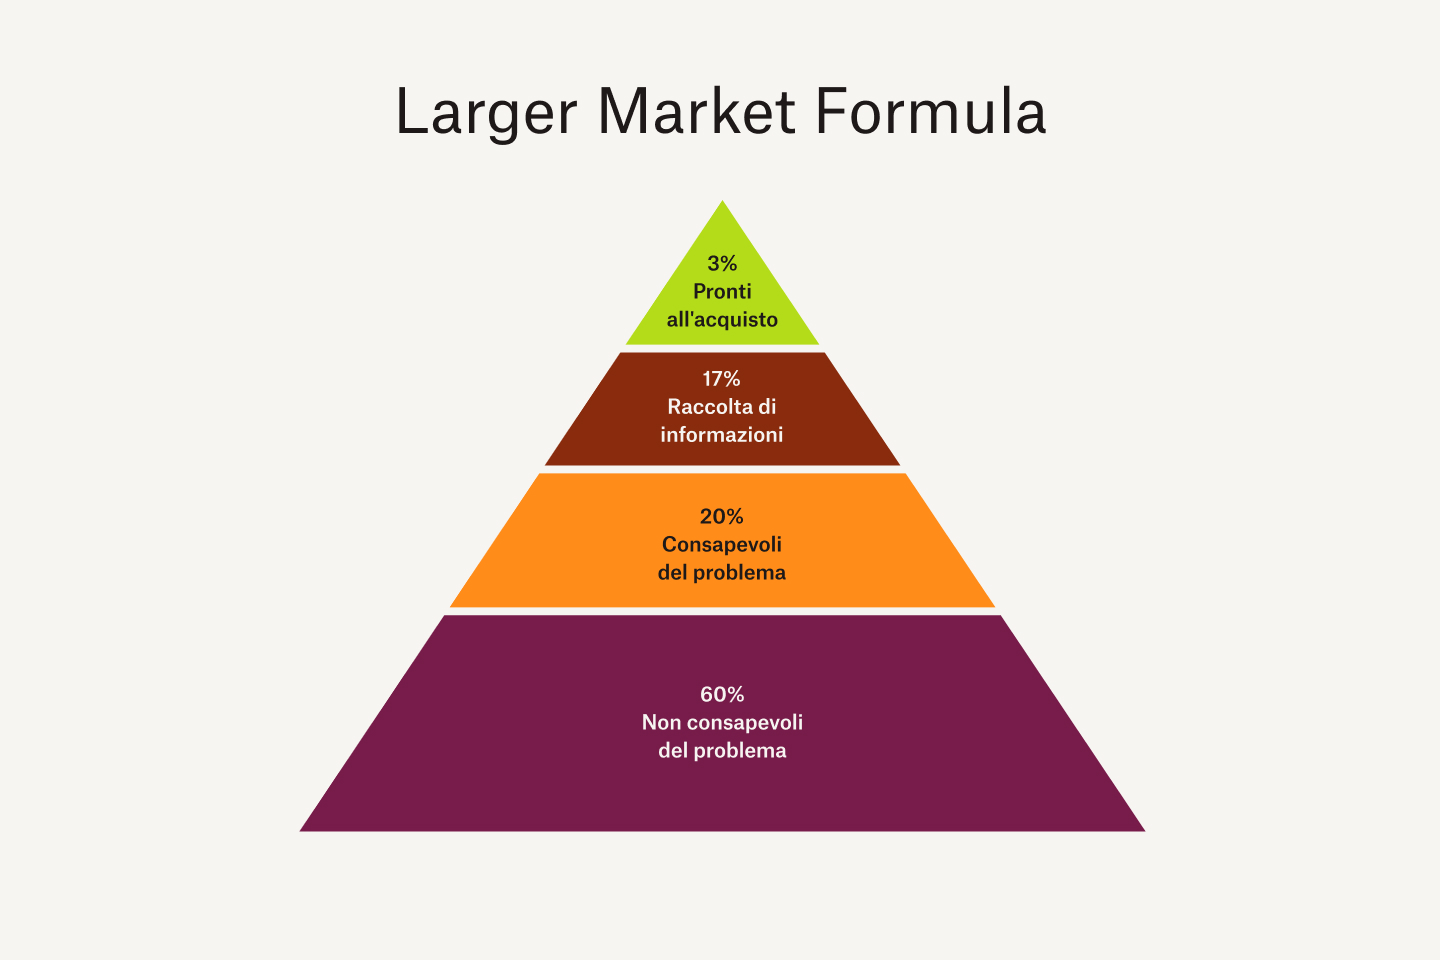 Grafico della Larger Market Formula: il 3% acquista subito, il 17% raccoglie informazioni, il 20% è consapevole dei problemi e il 60% è inconsapevole dei problemi